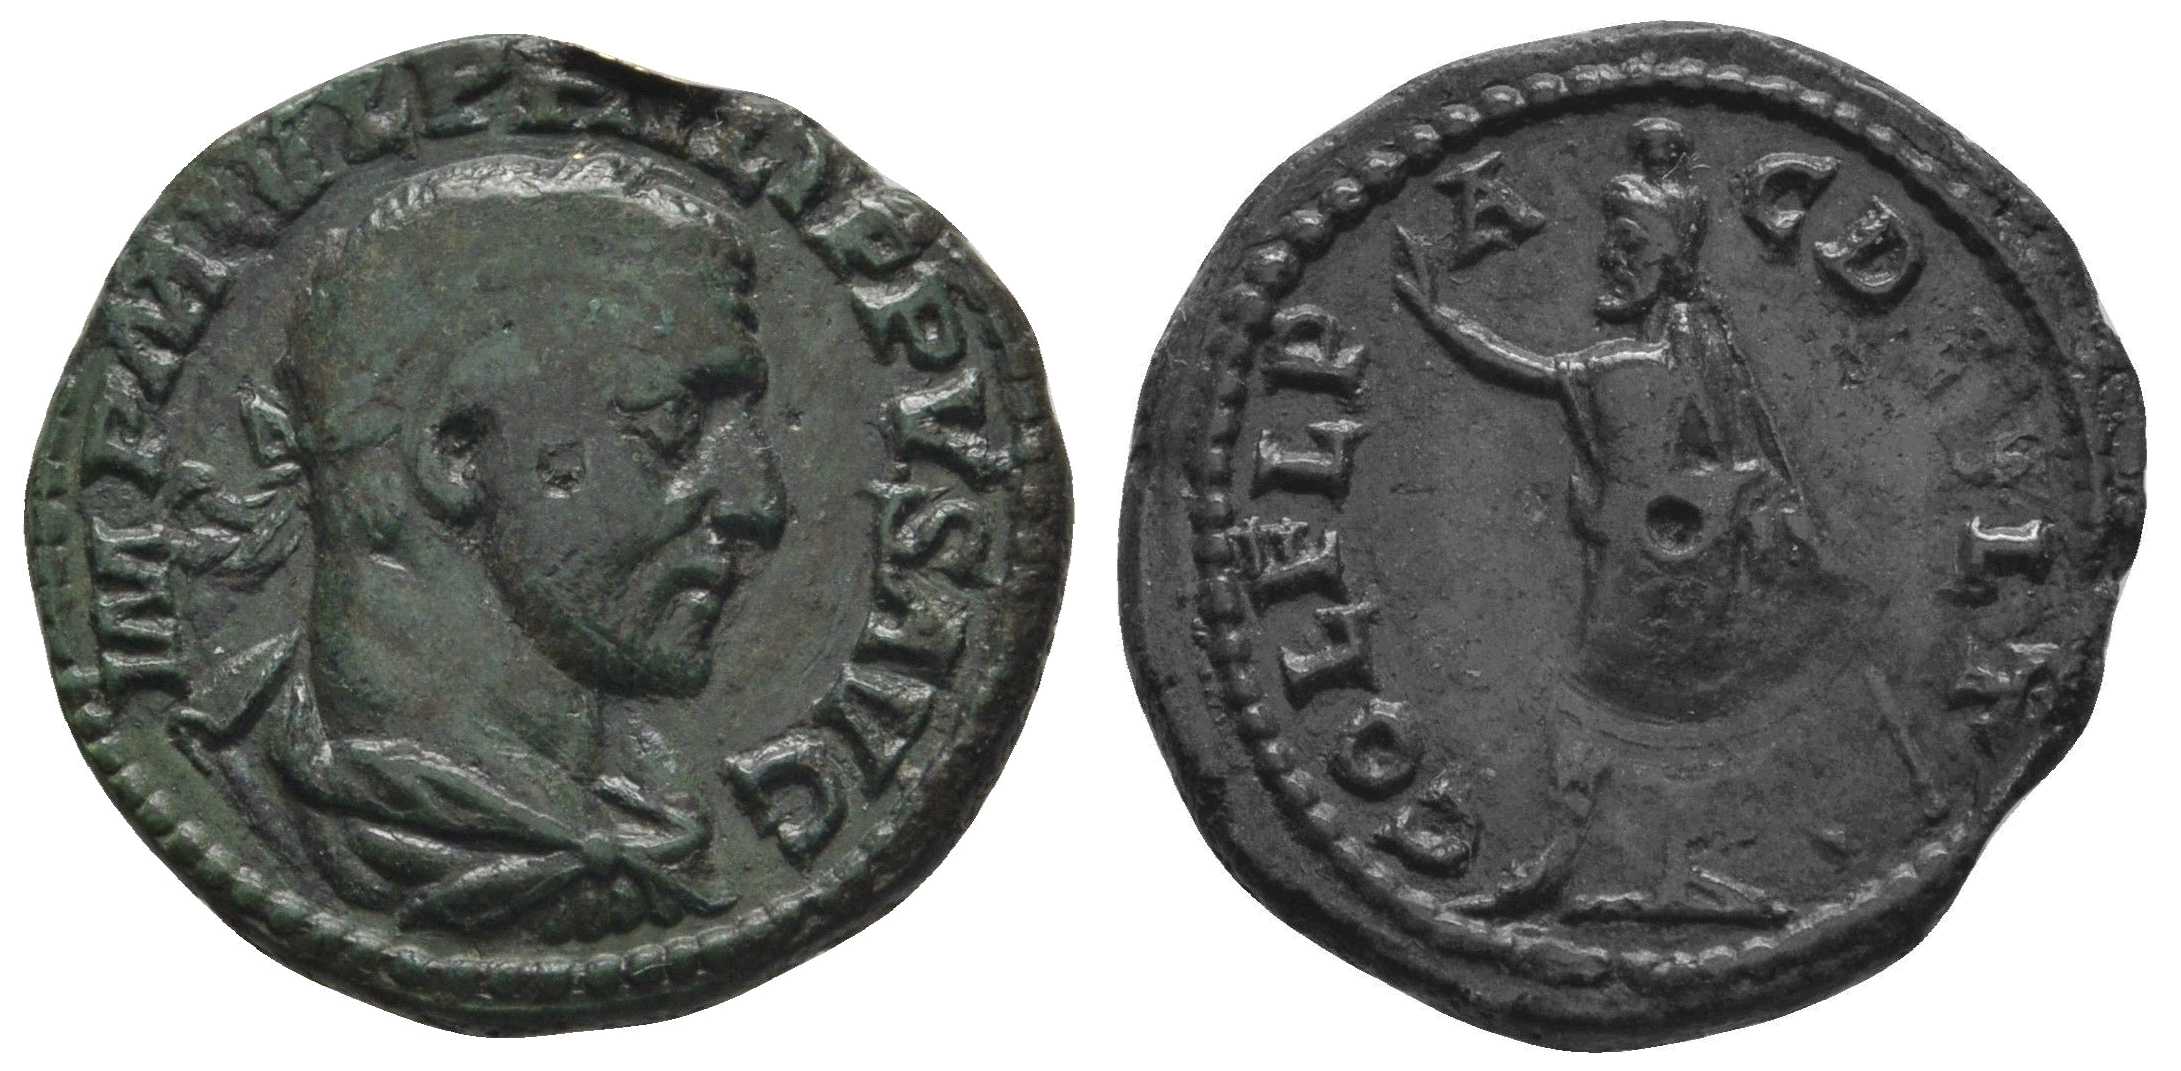 5865 Deultum Thracia Philippus I AE